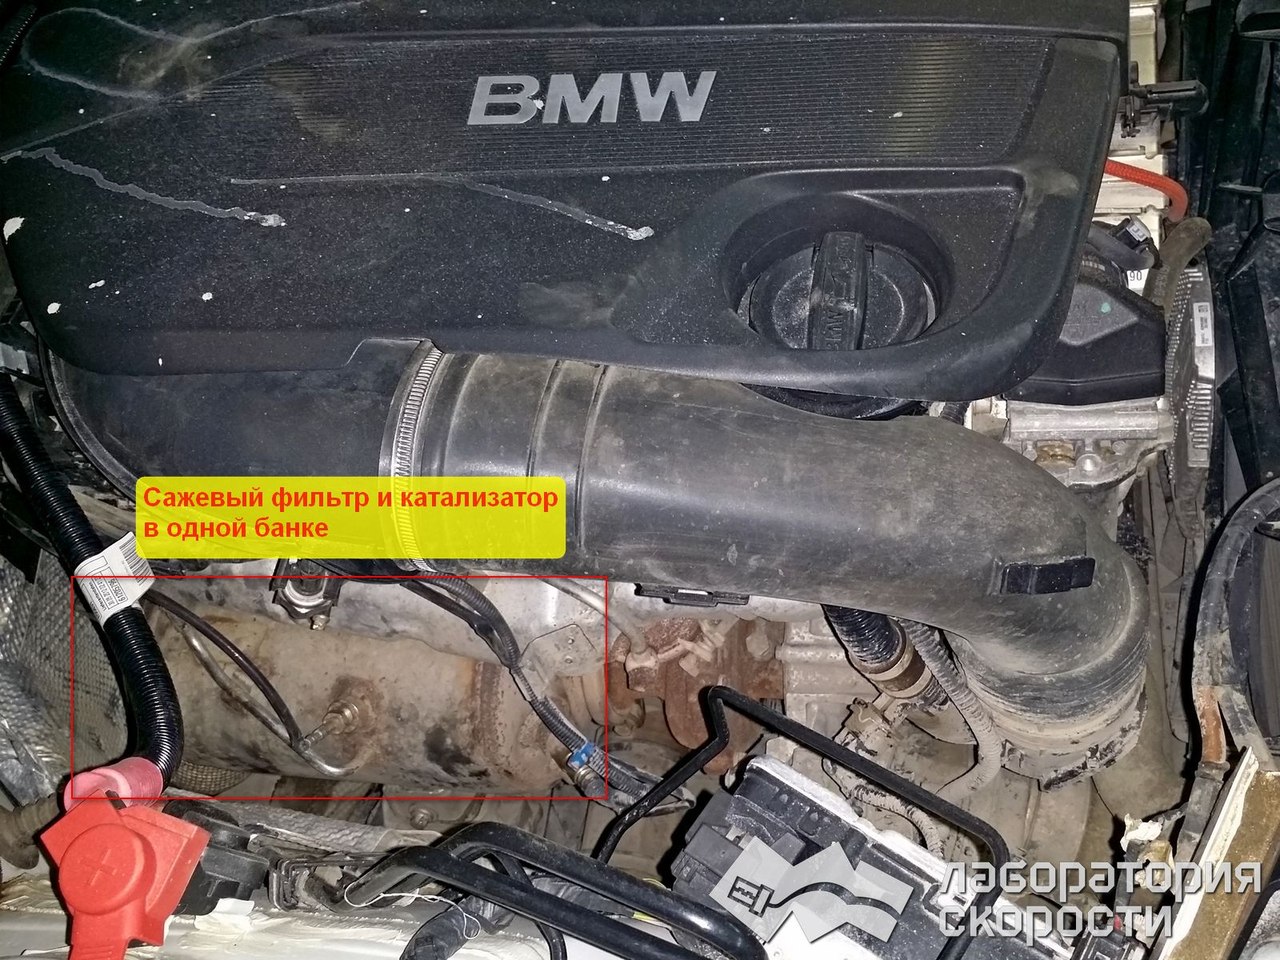 Чип-тюнинг BMW X3 F25 3.0d. УДаление сажевого фильтра и ЕГР. Отчет